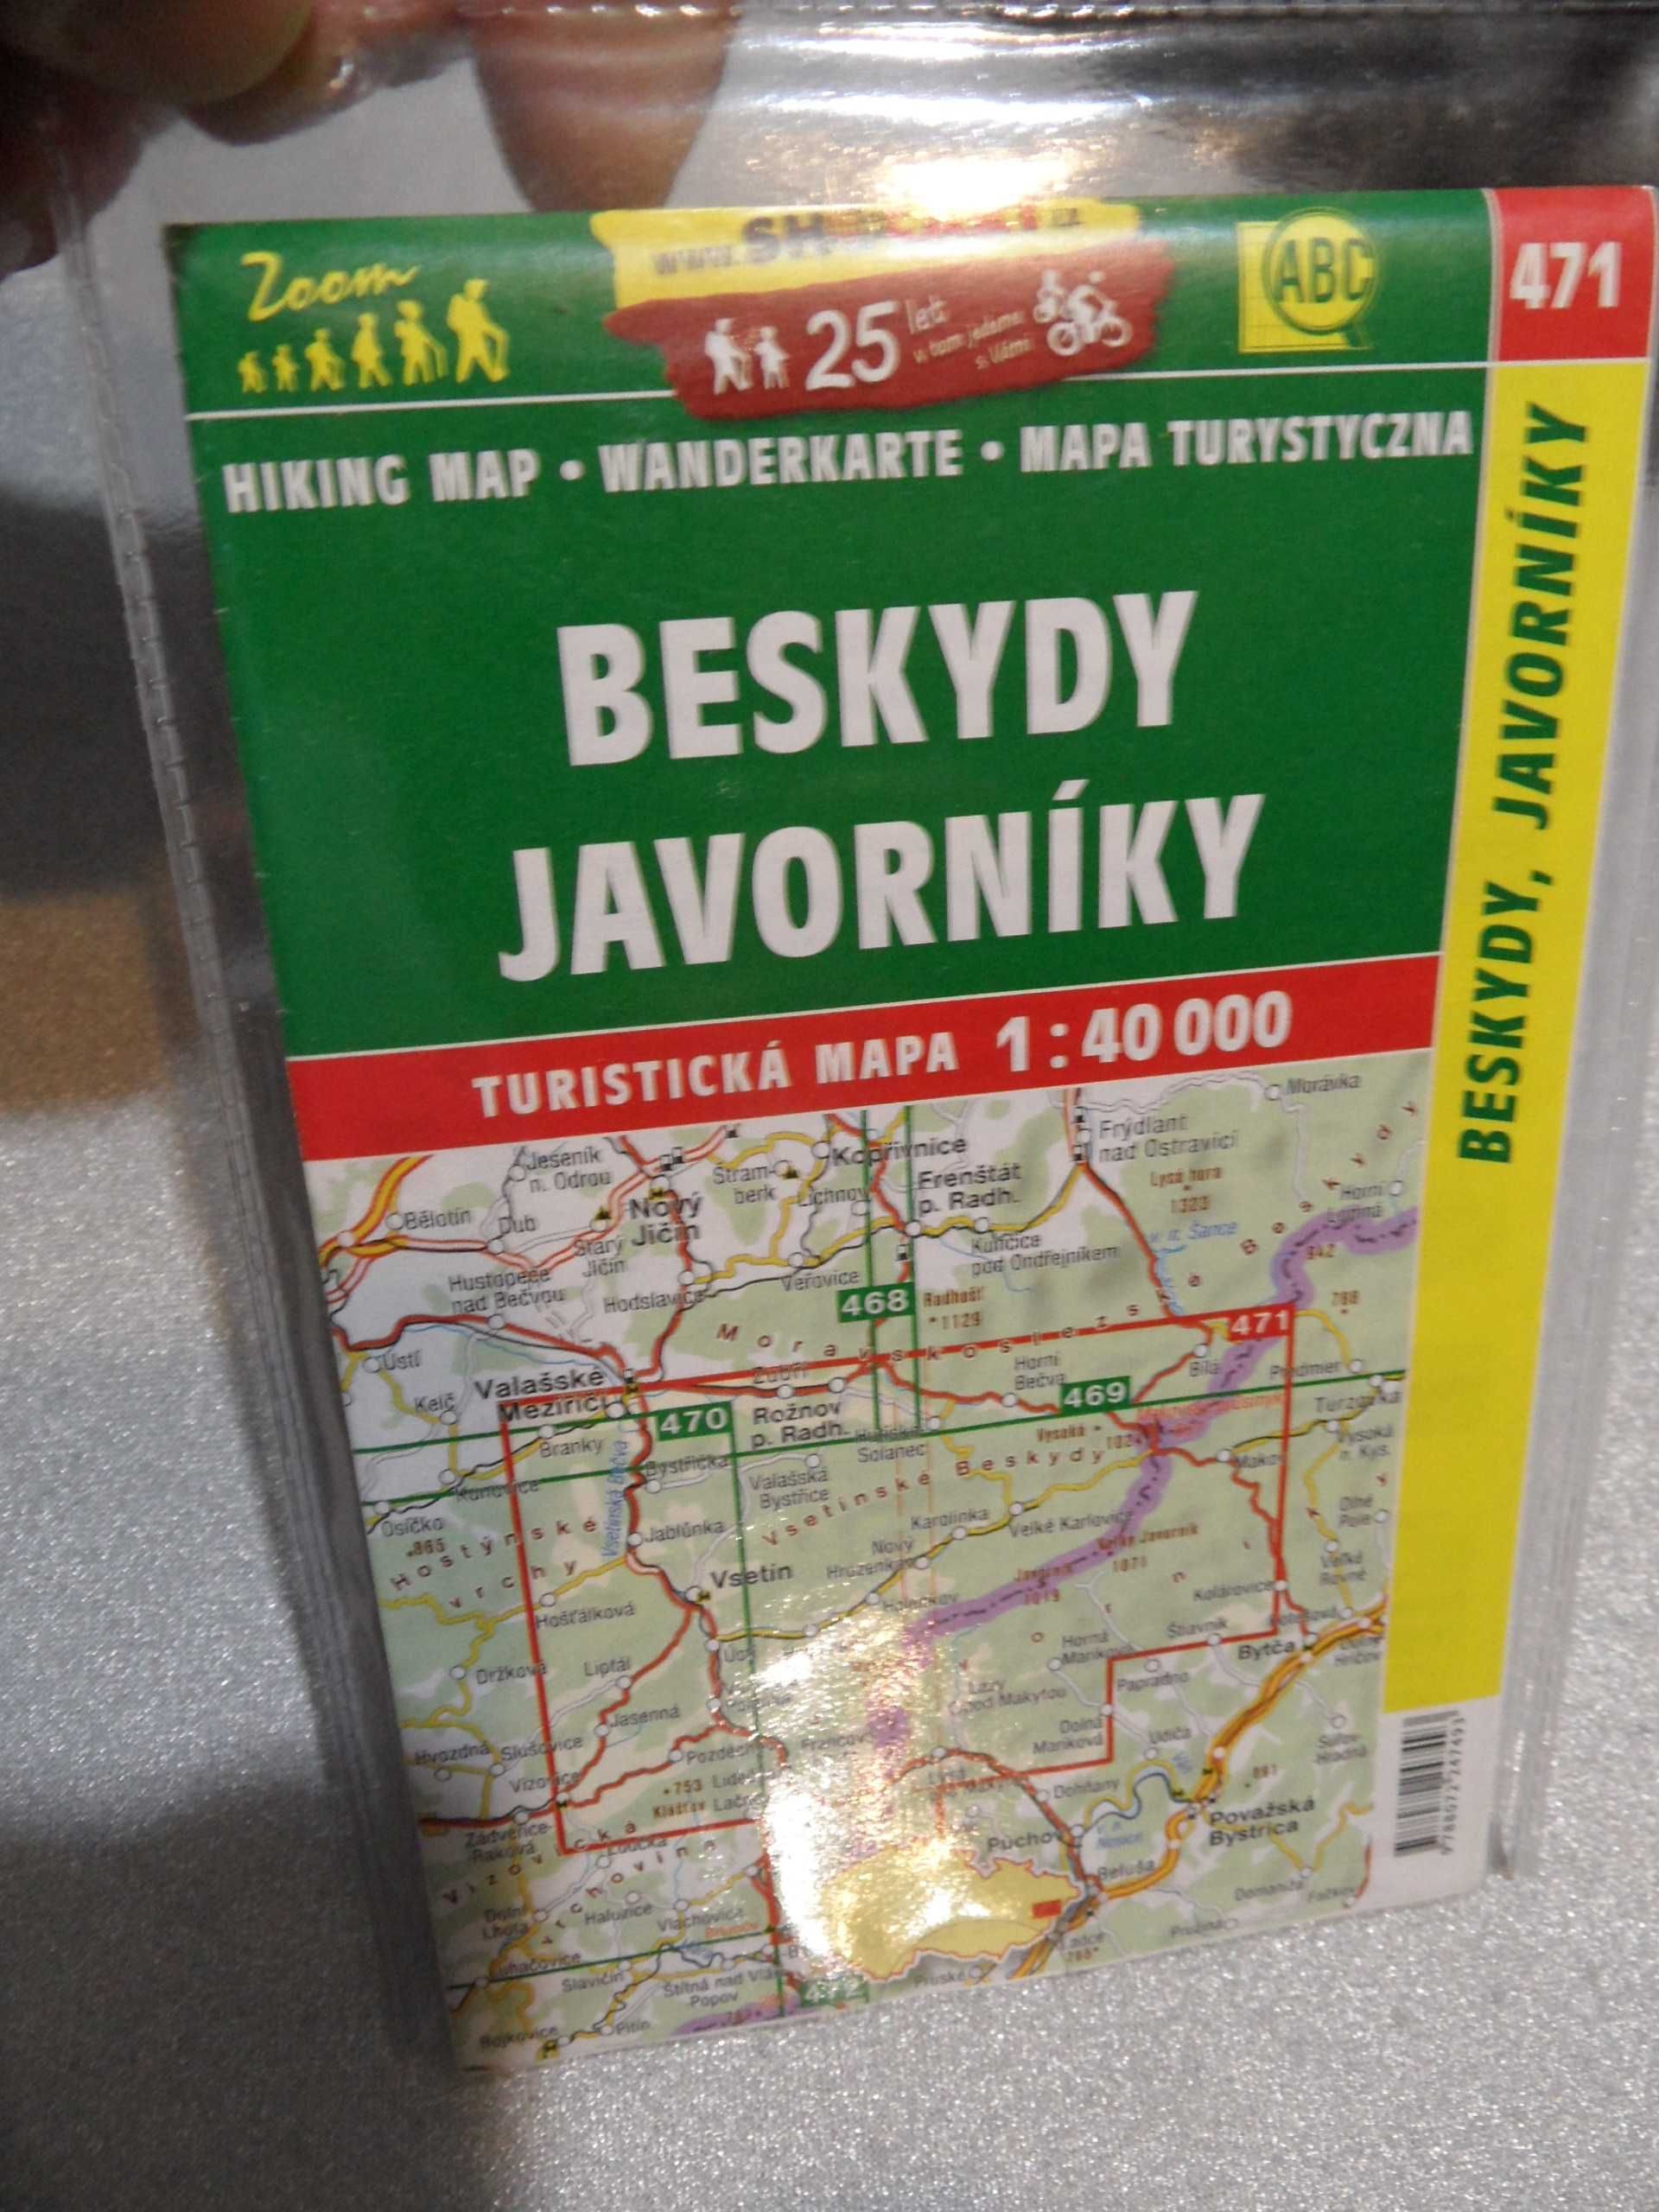 Mapa turystyczna czechy Beskidy Jaworniki Beskydy Javorniky Shocart